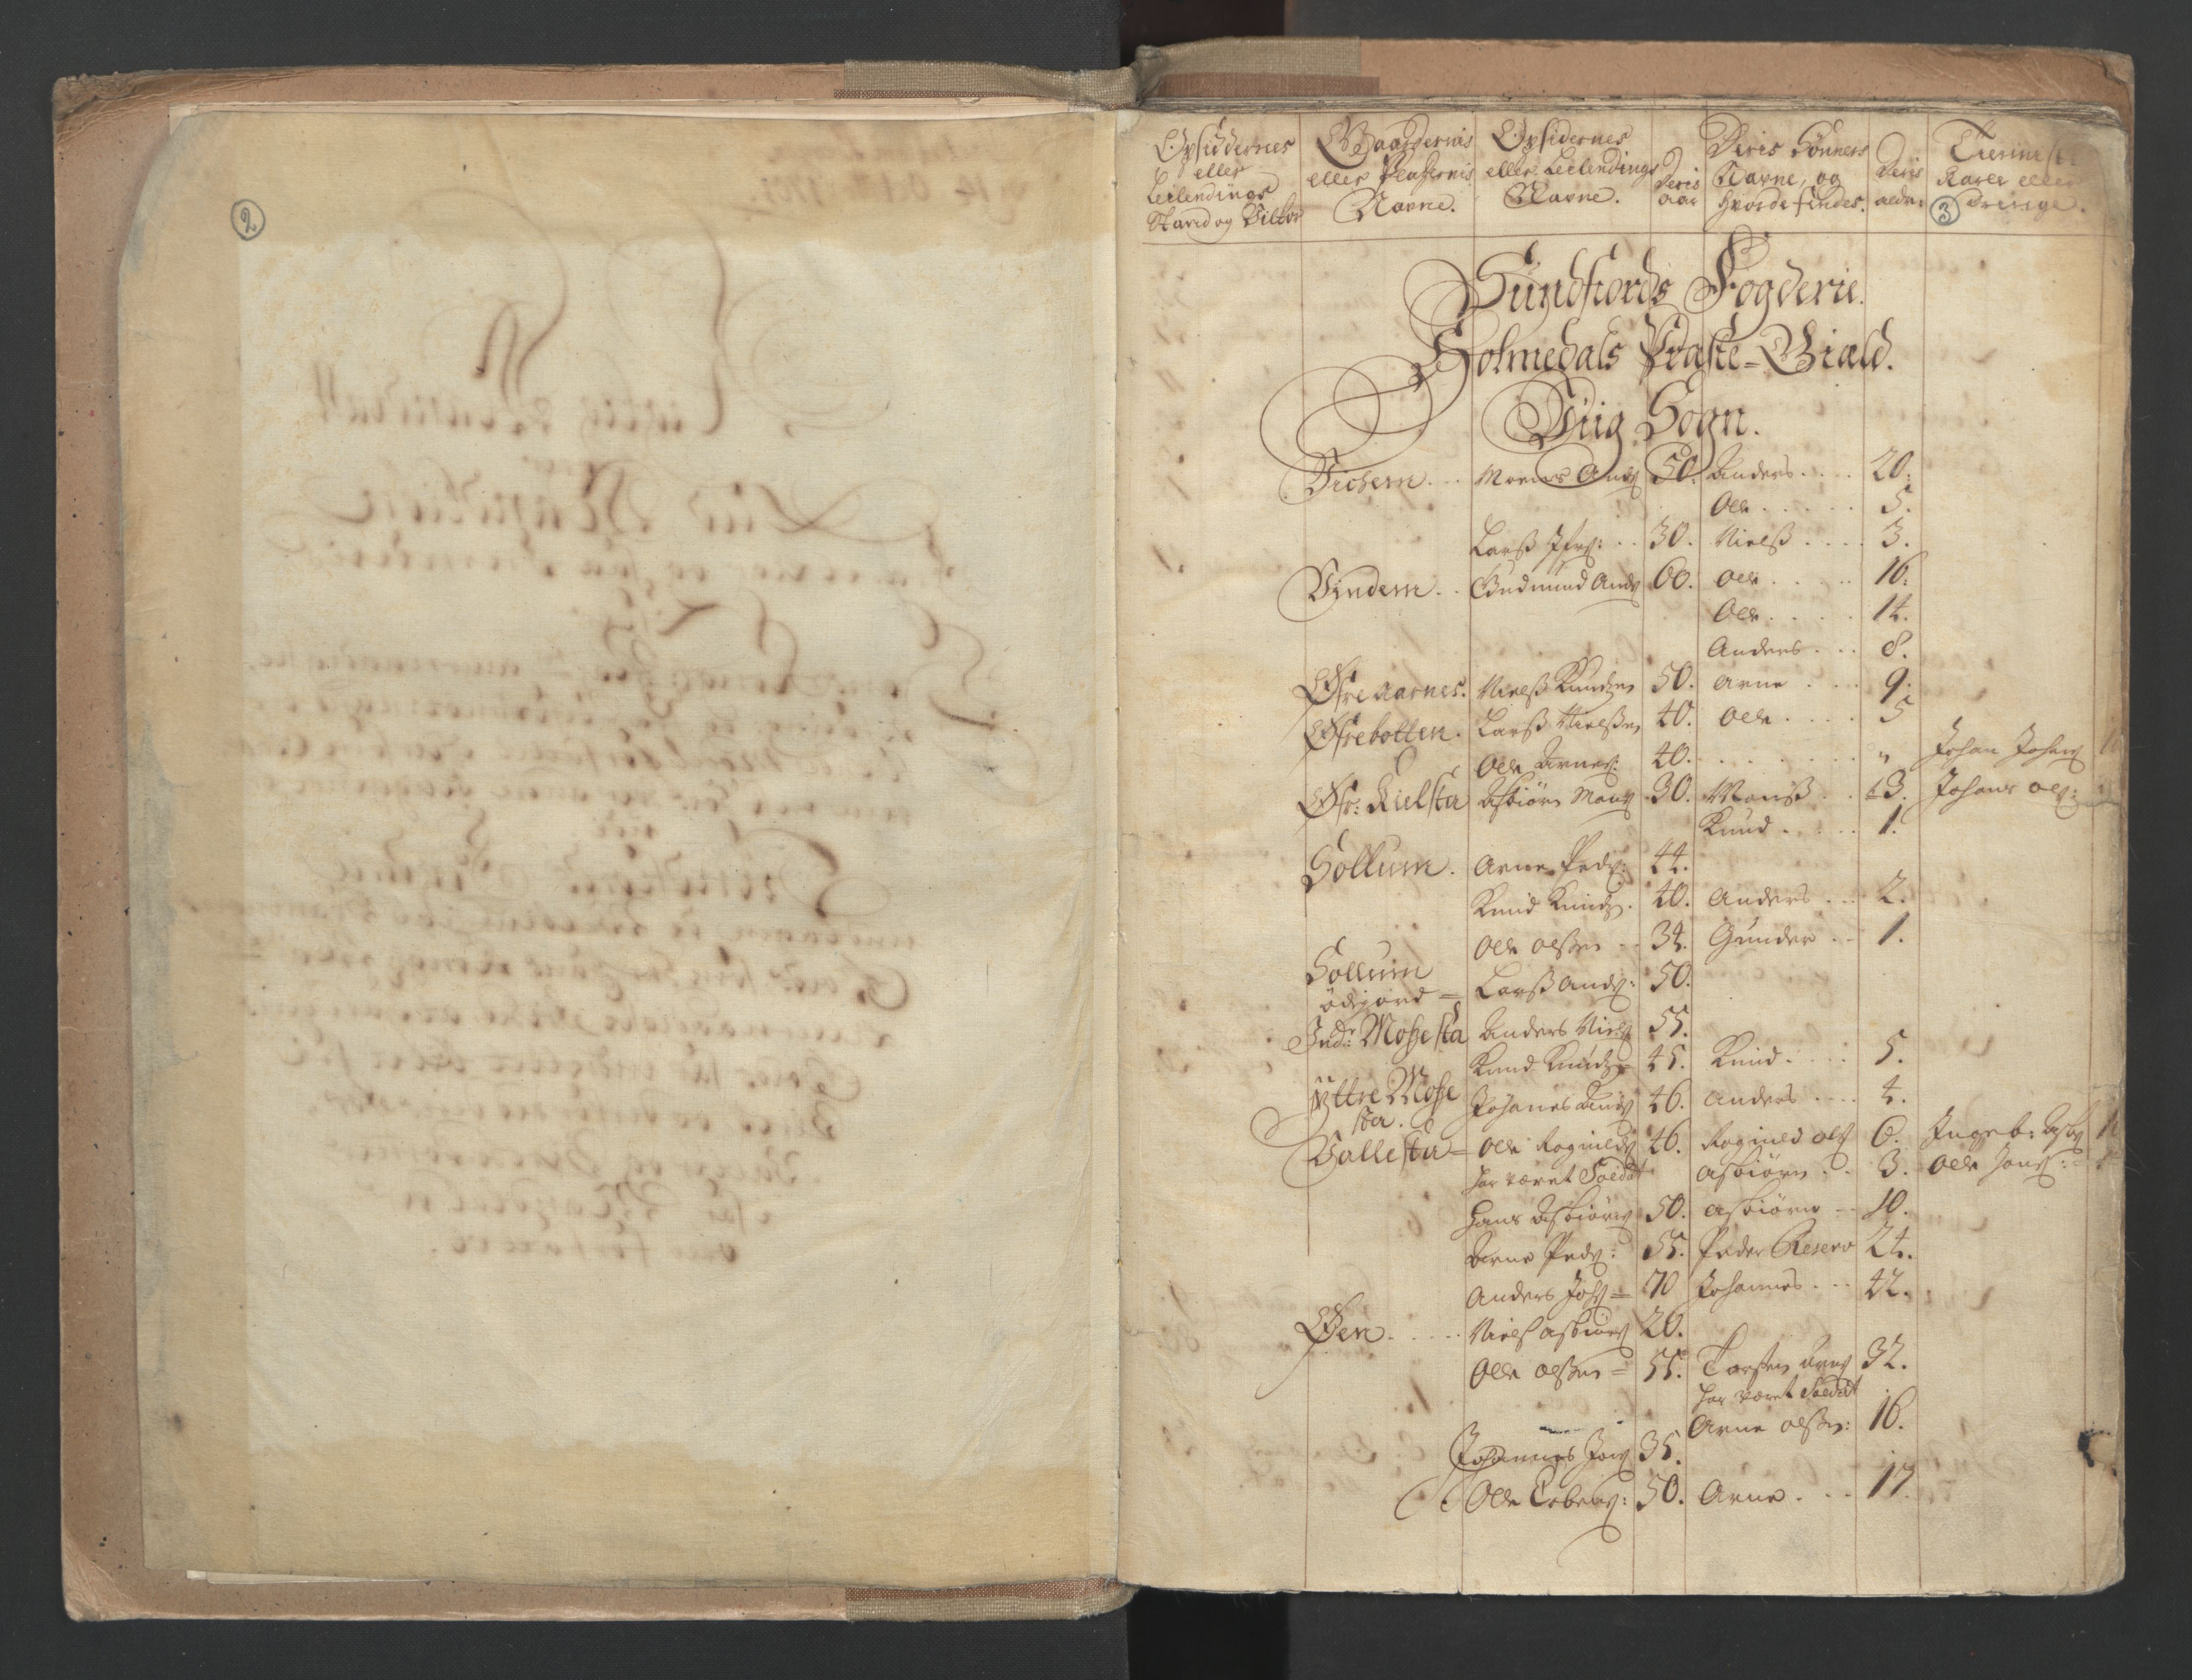 RA, Census (manntall) 1701, no. 9: Sunnfjord fogderi, Nordfjord fogderi and Svanø birk, 1701, p. 2-3